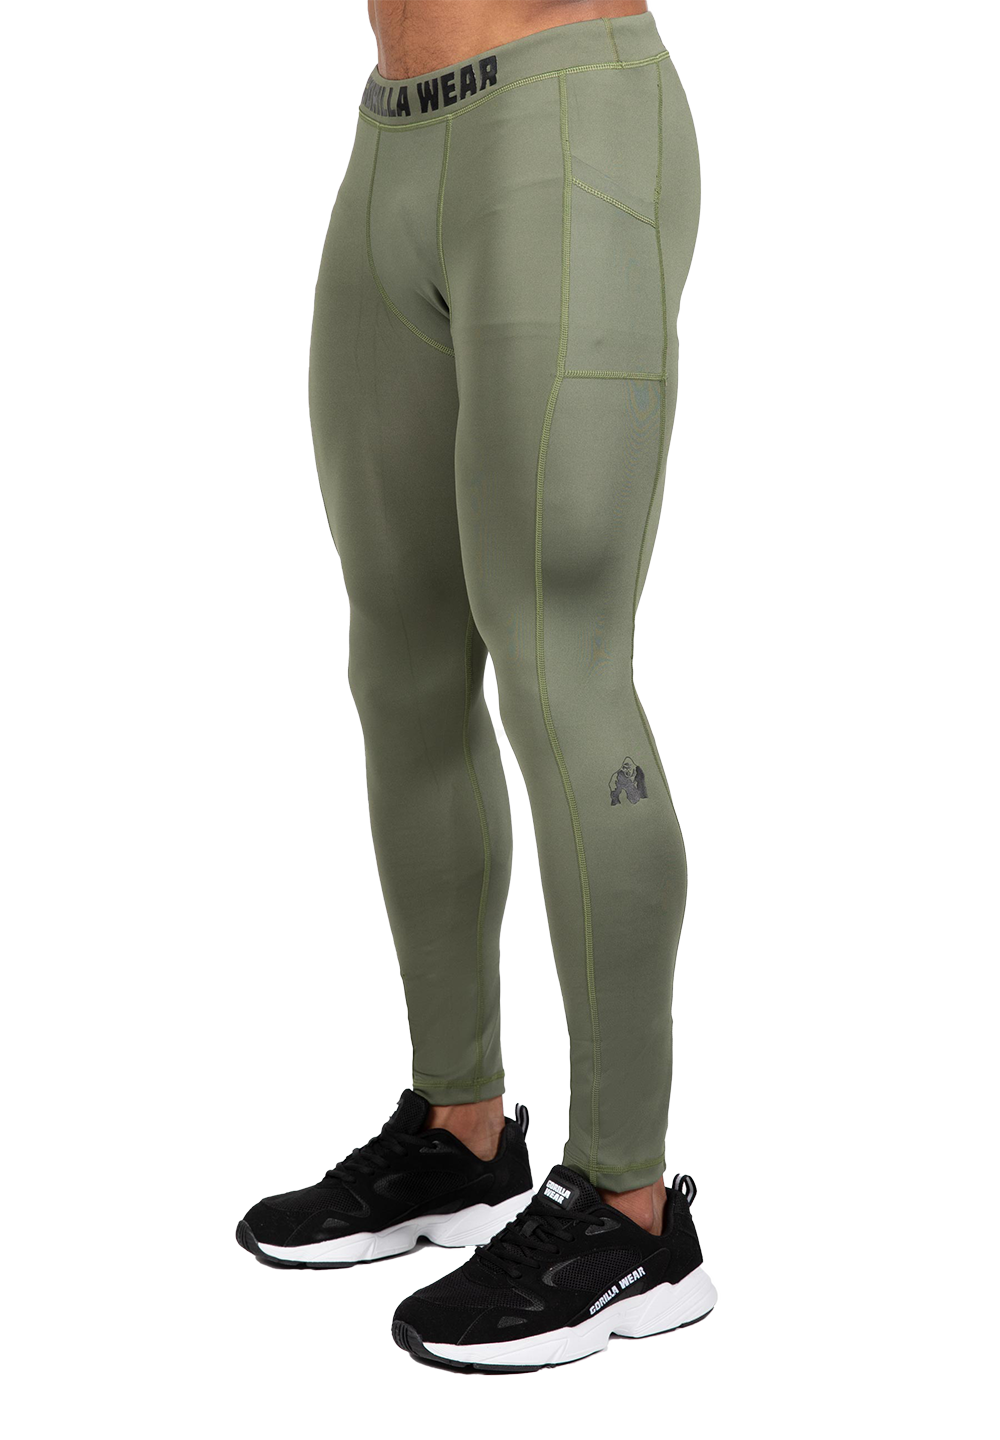 Тайтсы Smart Tights – Army Green от Gorilla Wear